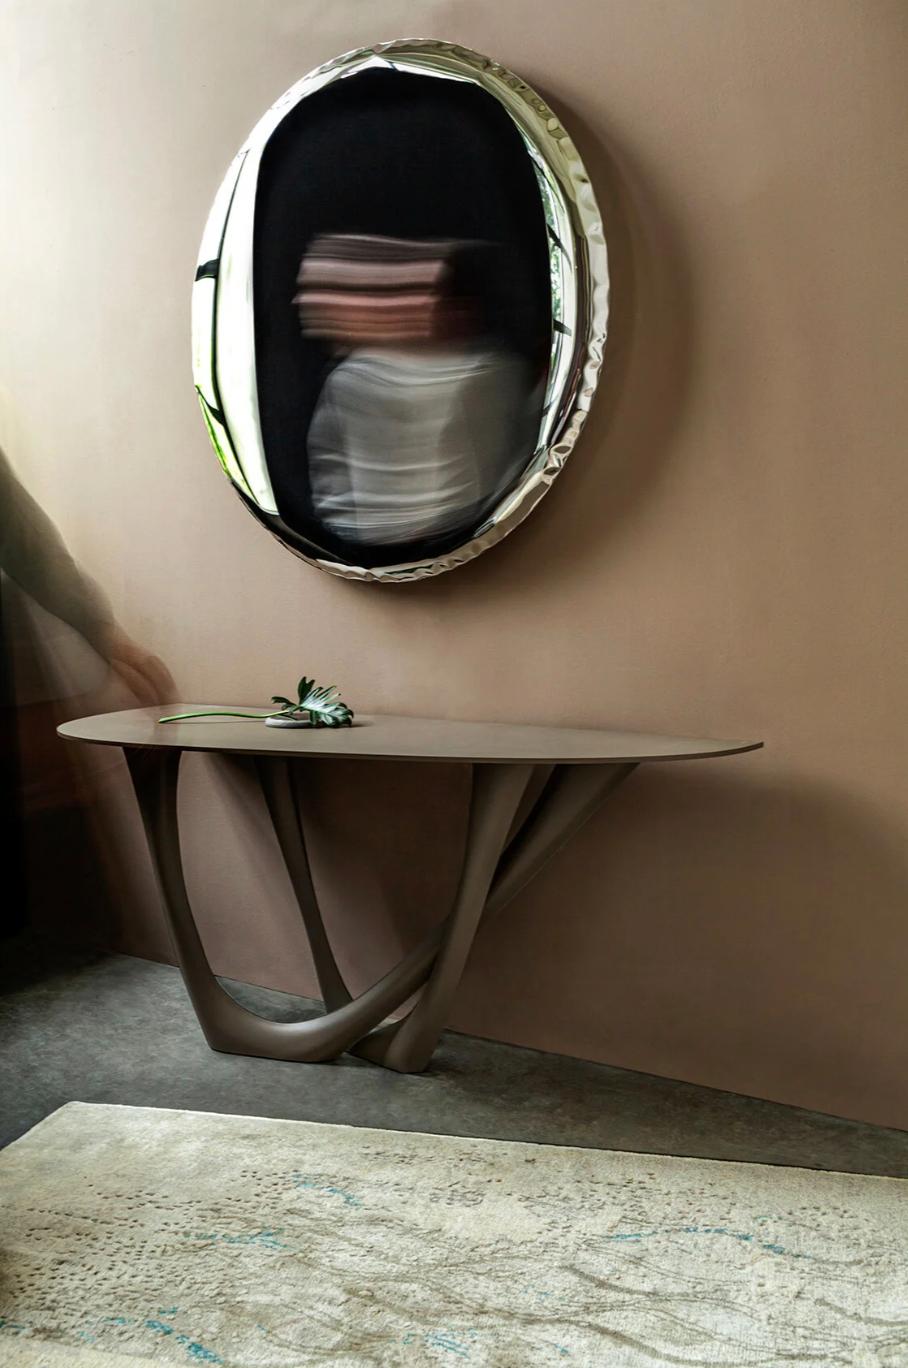 OKO ist mehr als nur ein Spiegel. Es ist eines der perfektesten und einfachsten Objekte aus Zietas Mirrors-Kollektion. Es ist formal und technologisch einzigartig. Seine ideal runde, glänzende Oberfläche reflektiert und streut das Licht, indem sie